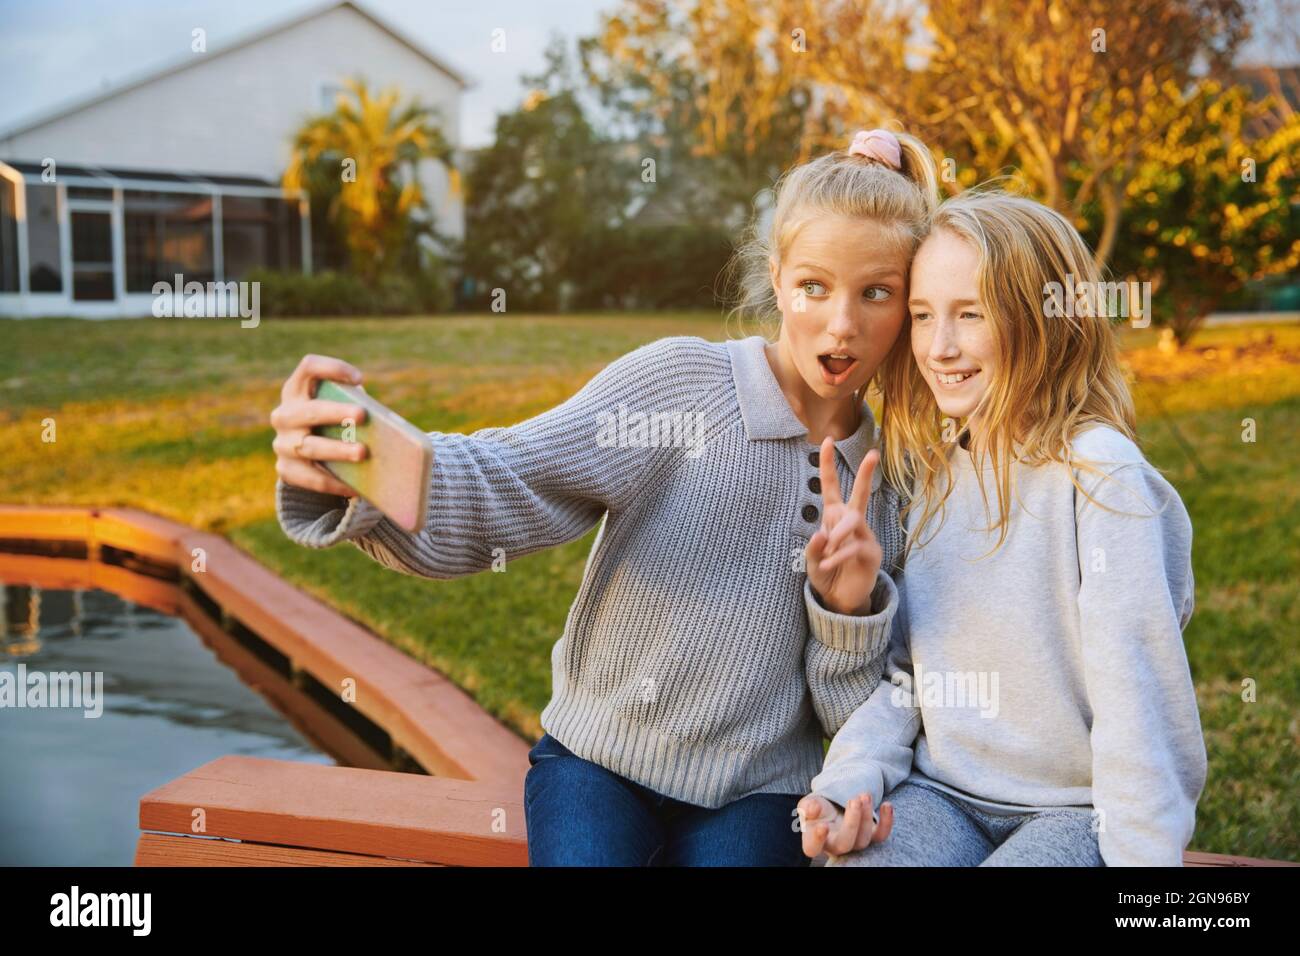 Mädchen mit offenem Mund gestikuliert, während Selfie mit Freund durch Smartphone am Teich Stockfoto